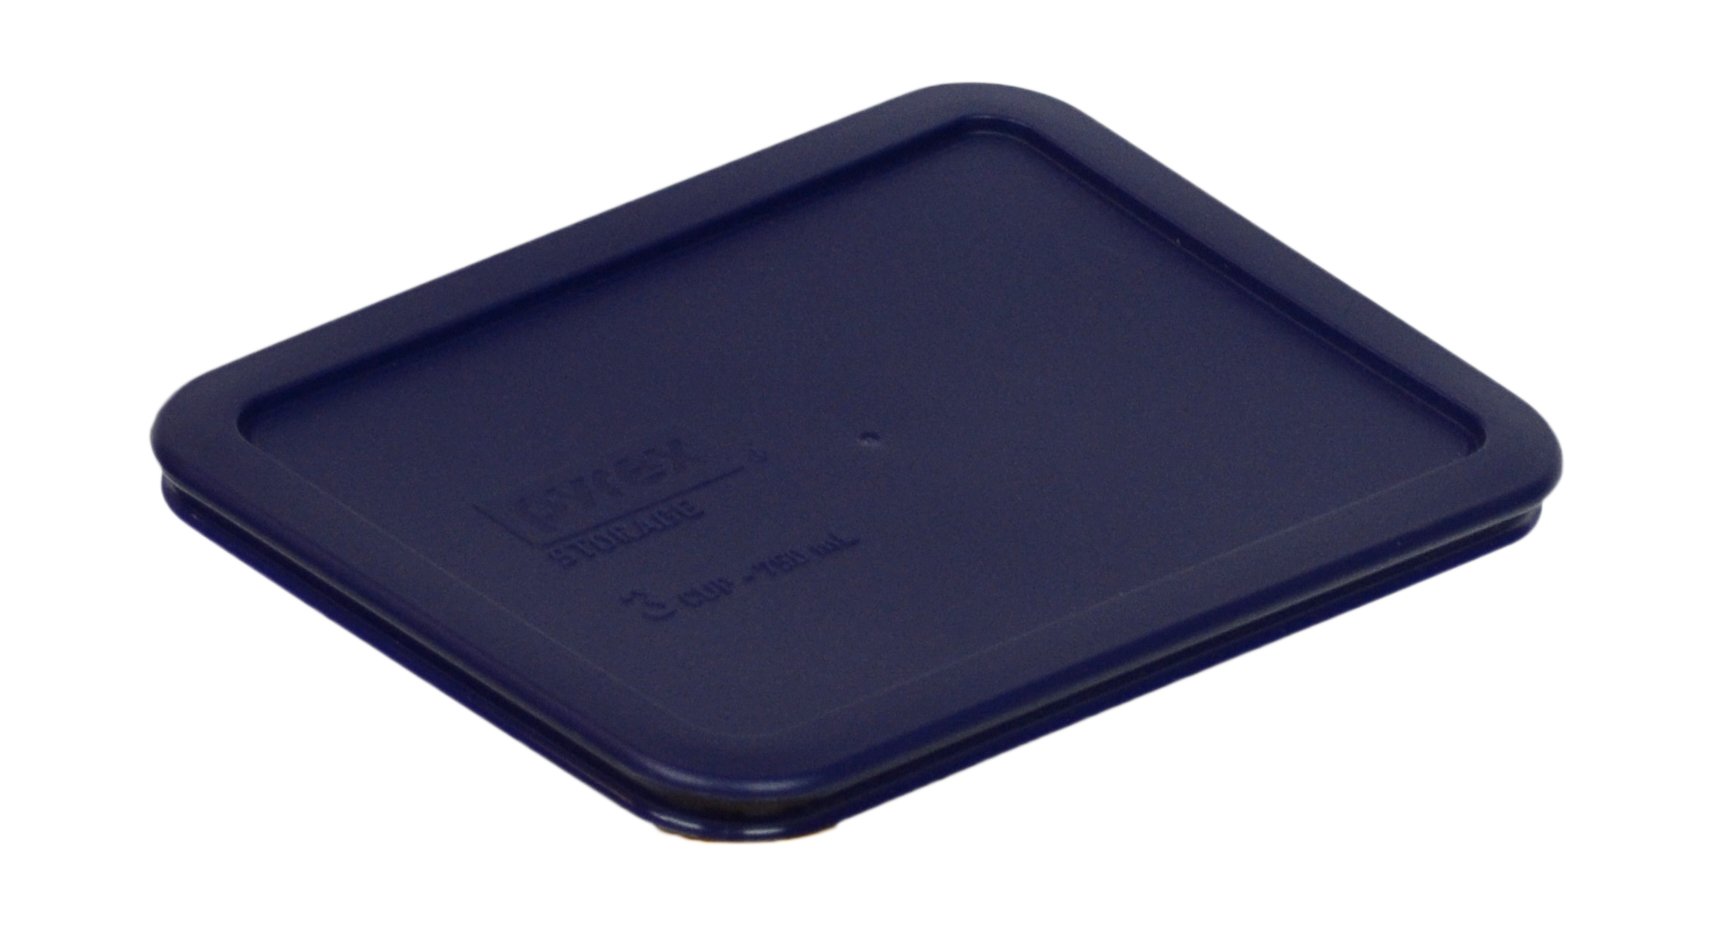 Pyrex Bundle - 6 Items: 7210-PC 3-Cup Blue Plastic Food Storage Lids